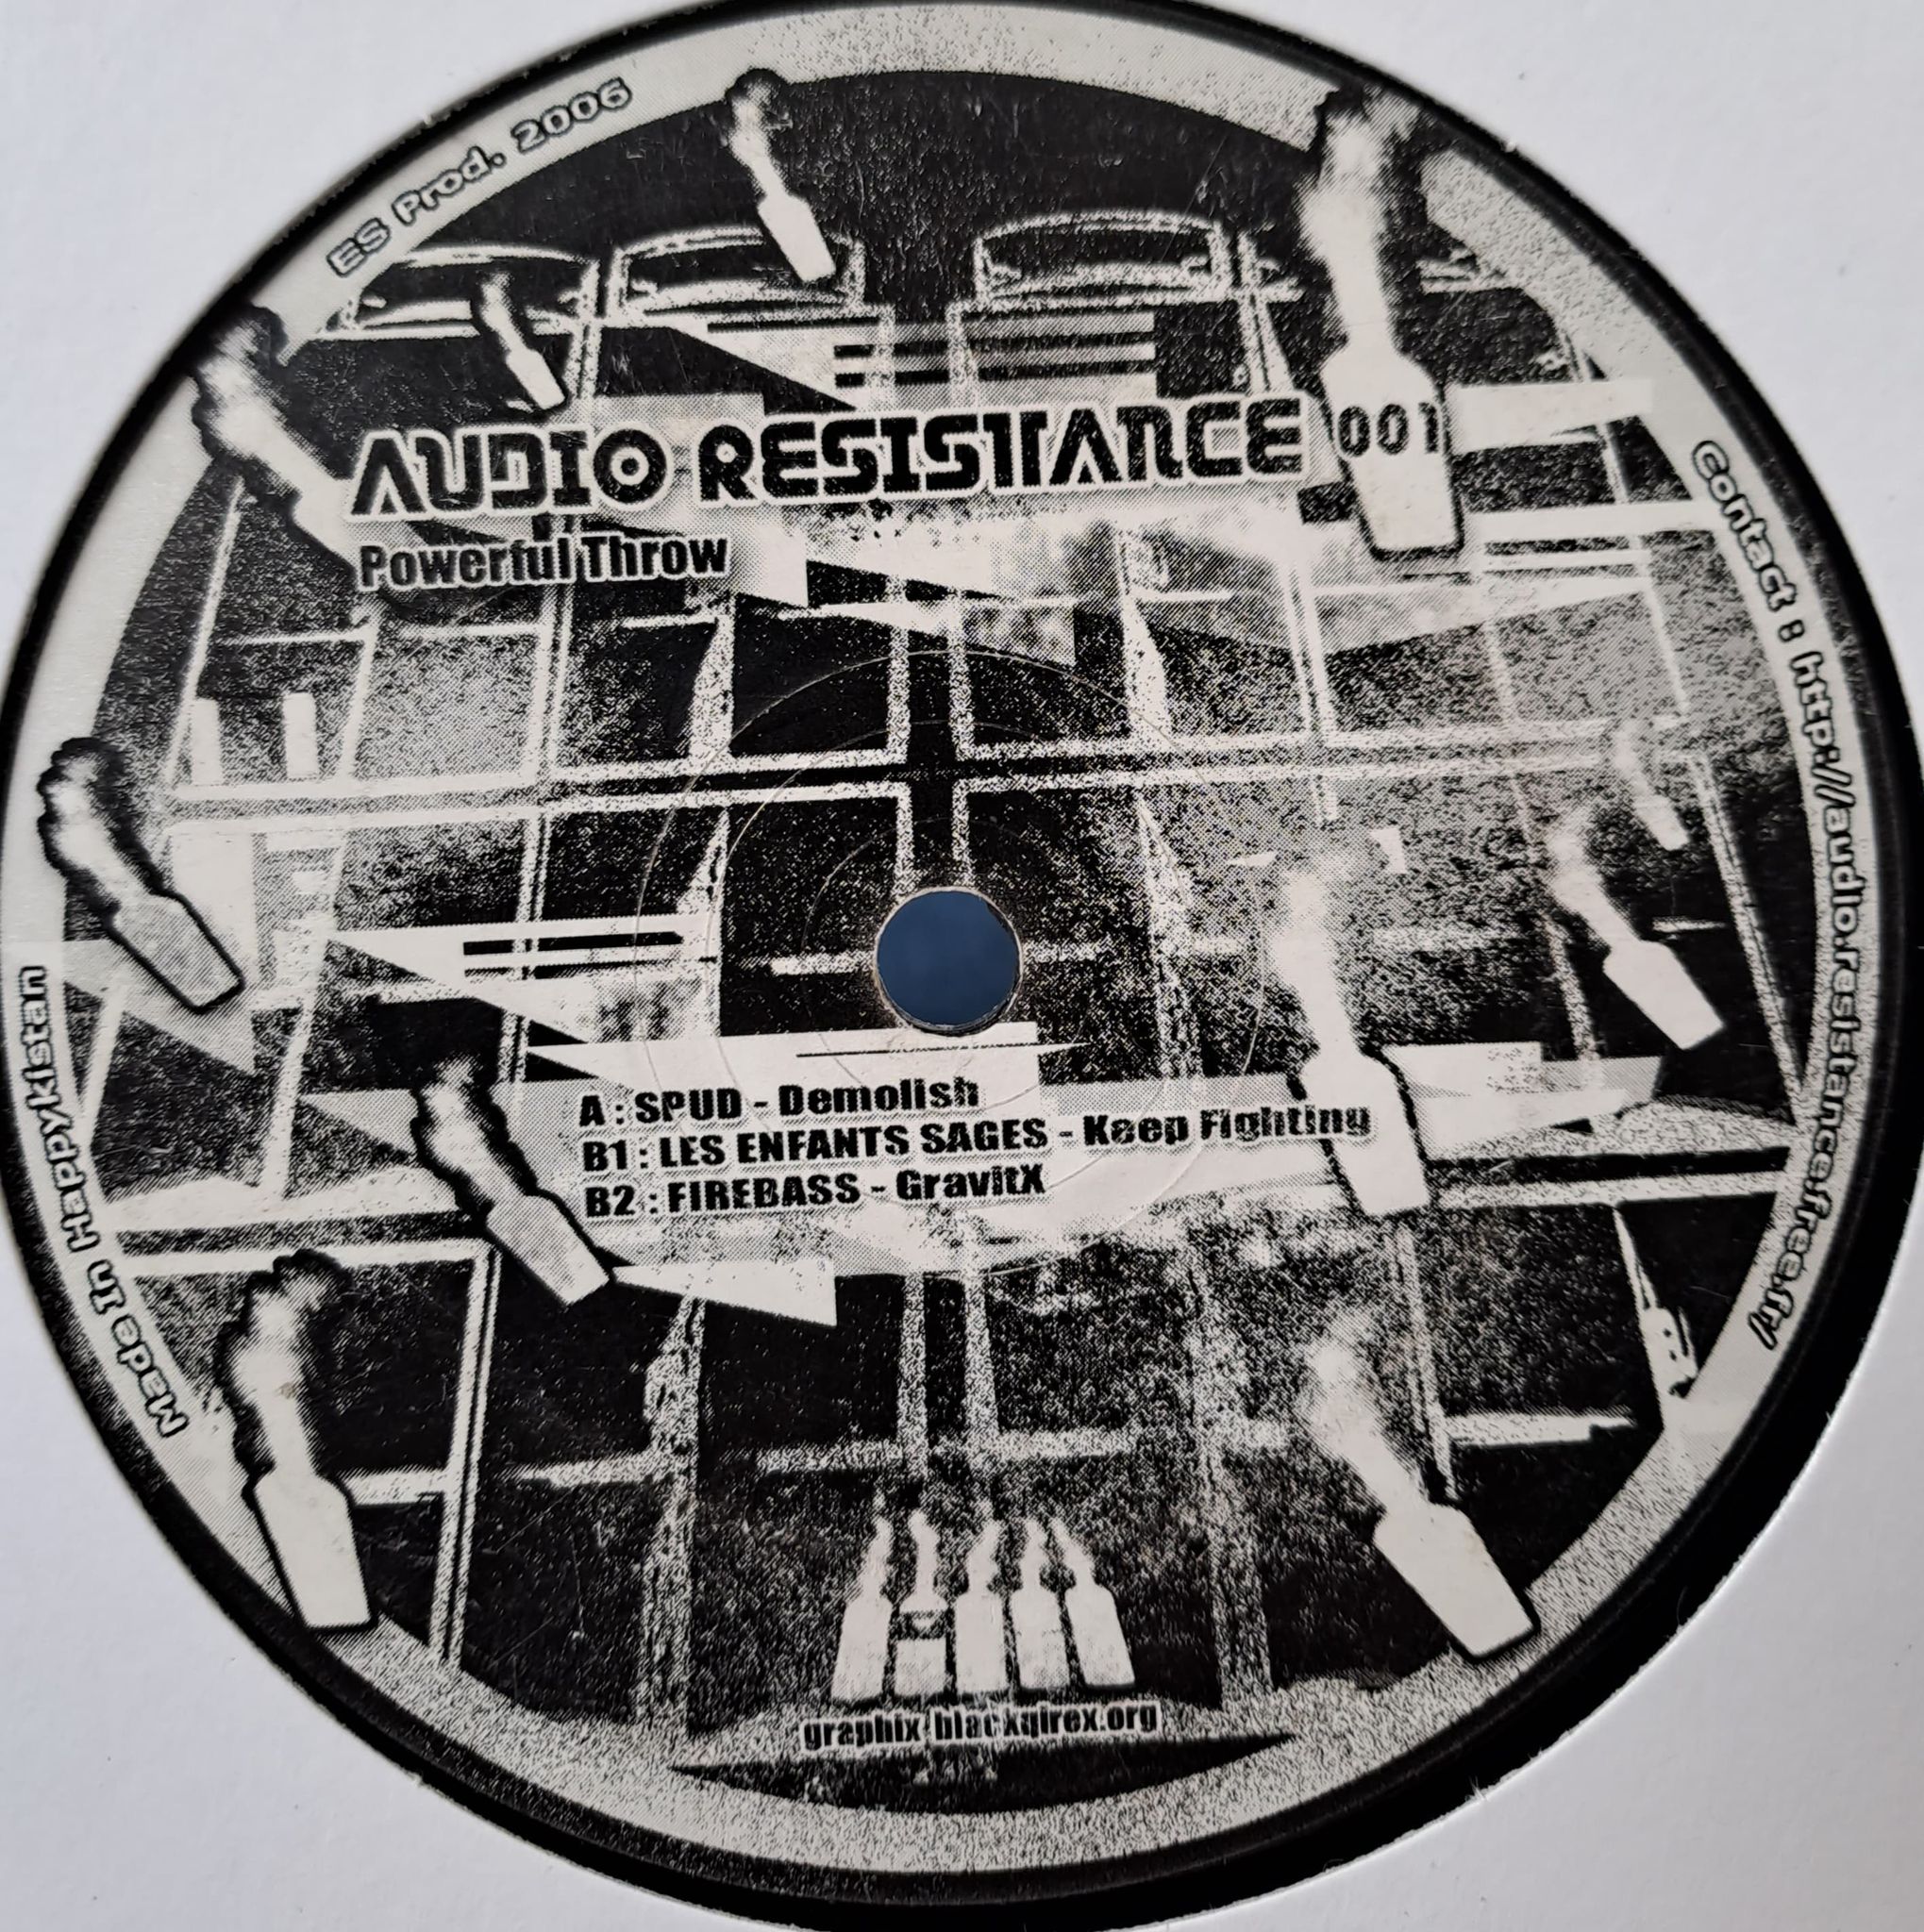 Audio Resistance 01 - vinyle freetekno